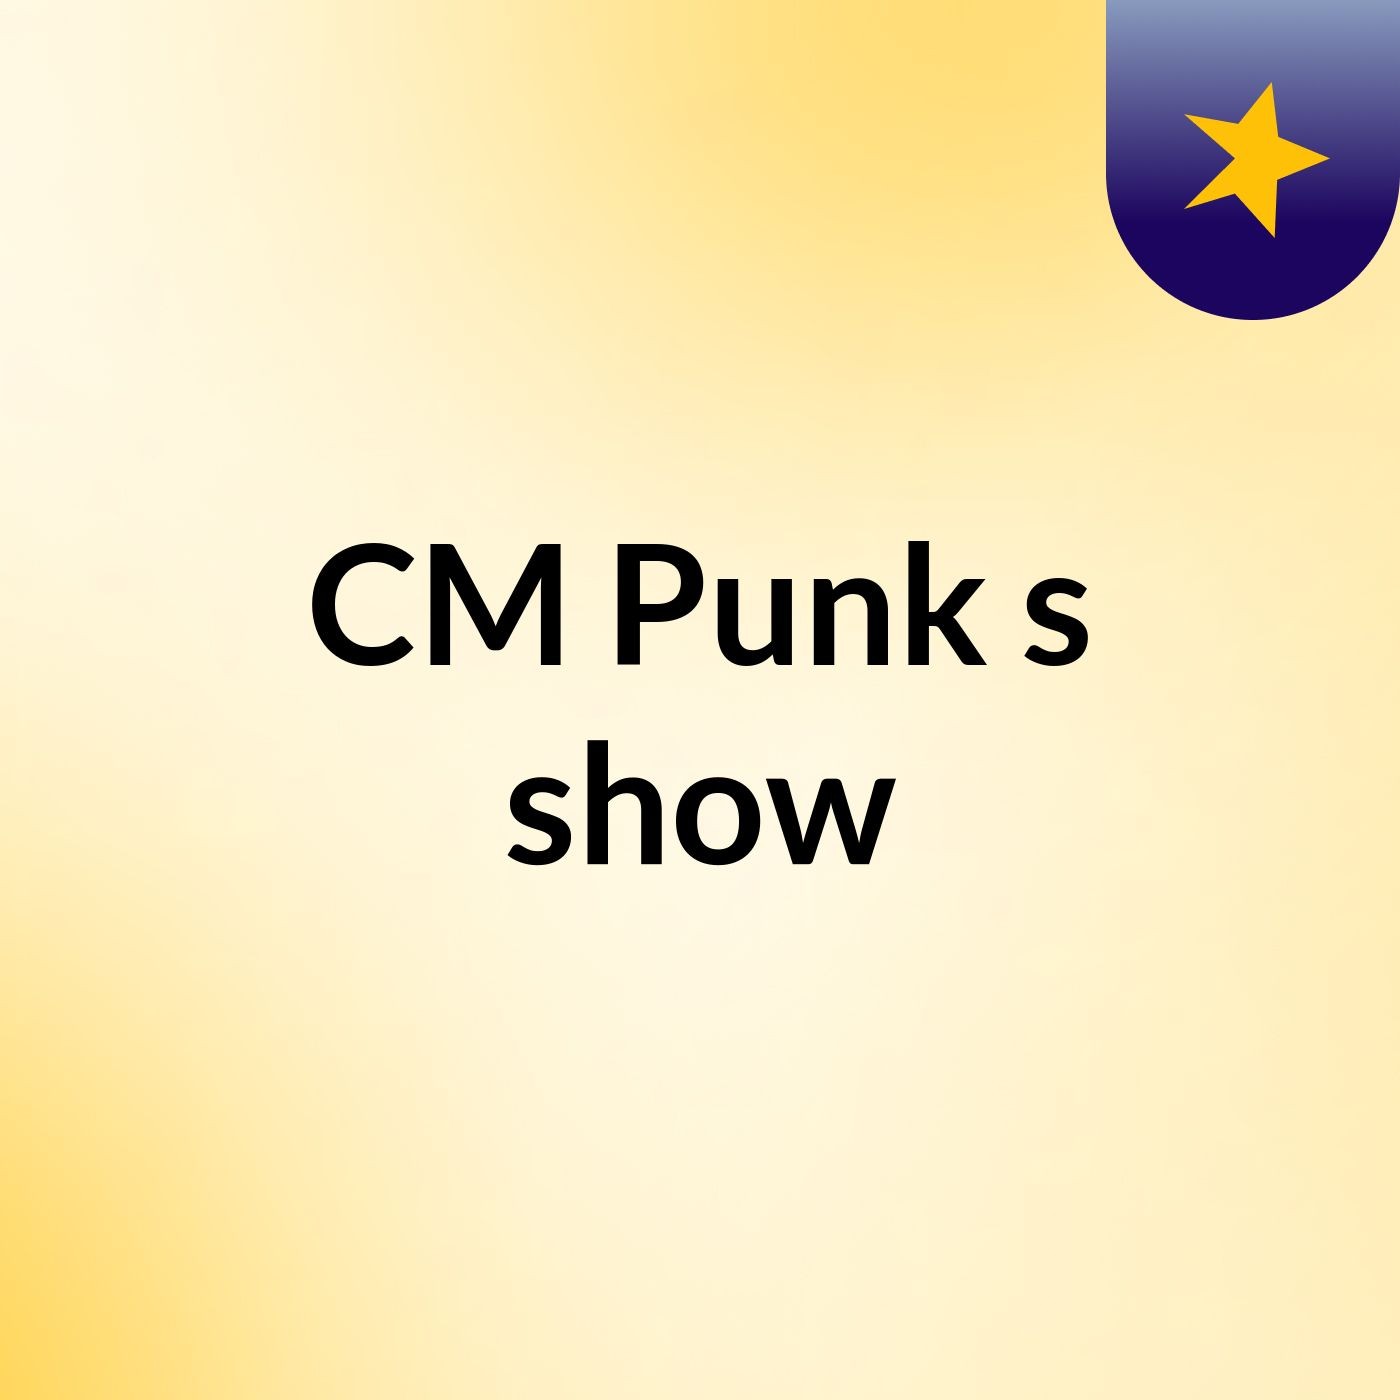 CM Punk's show